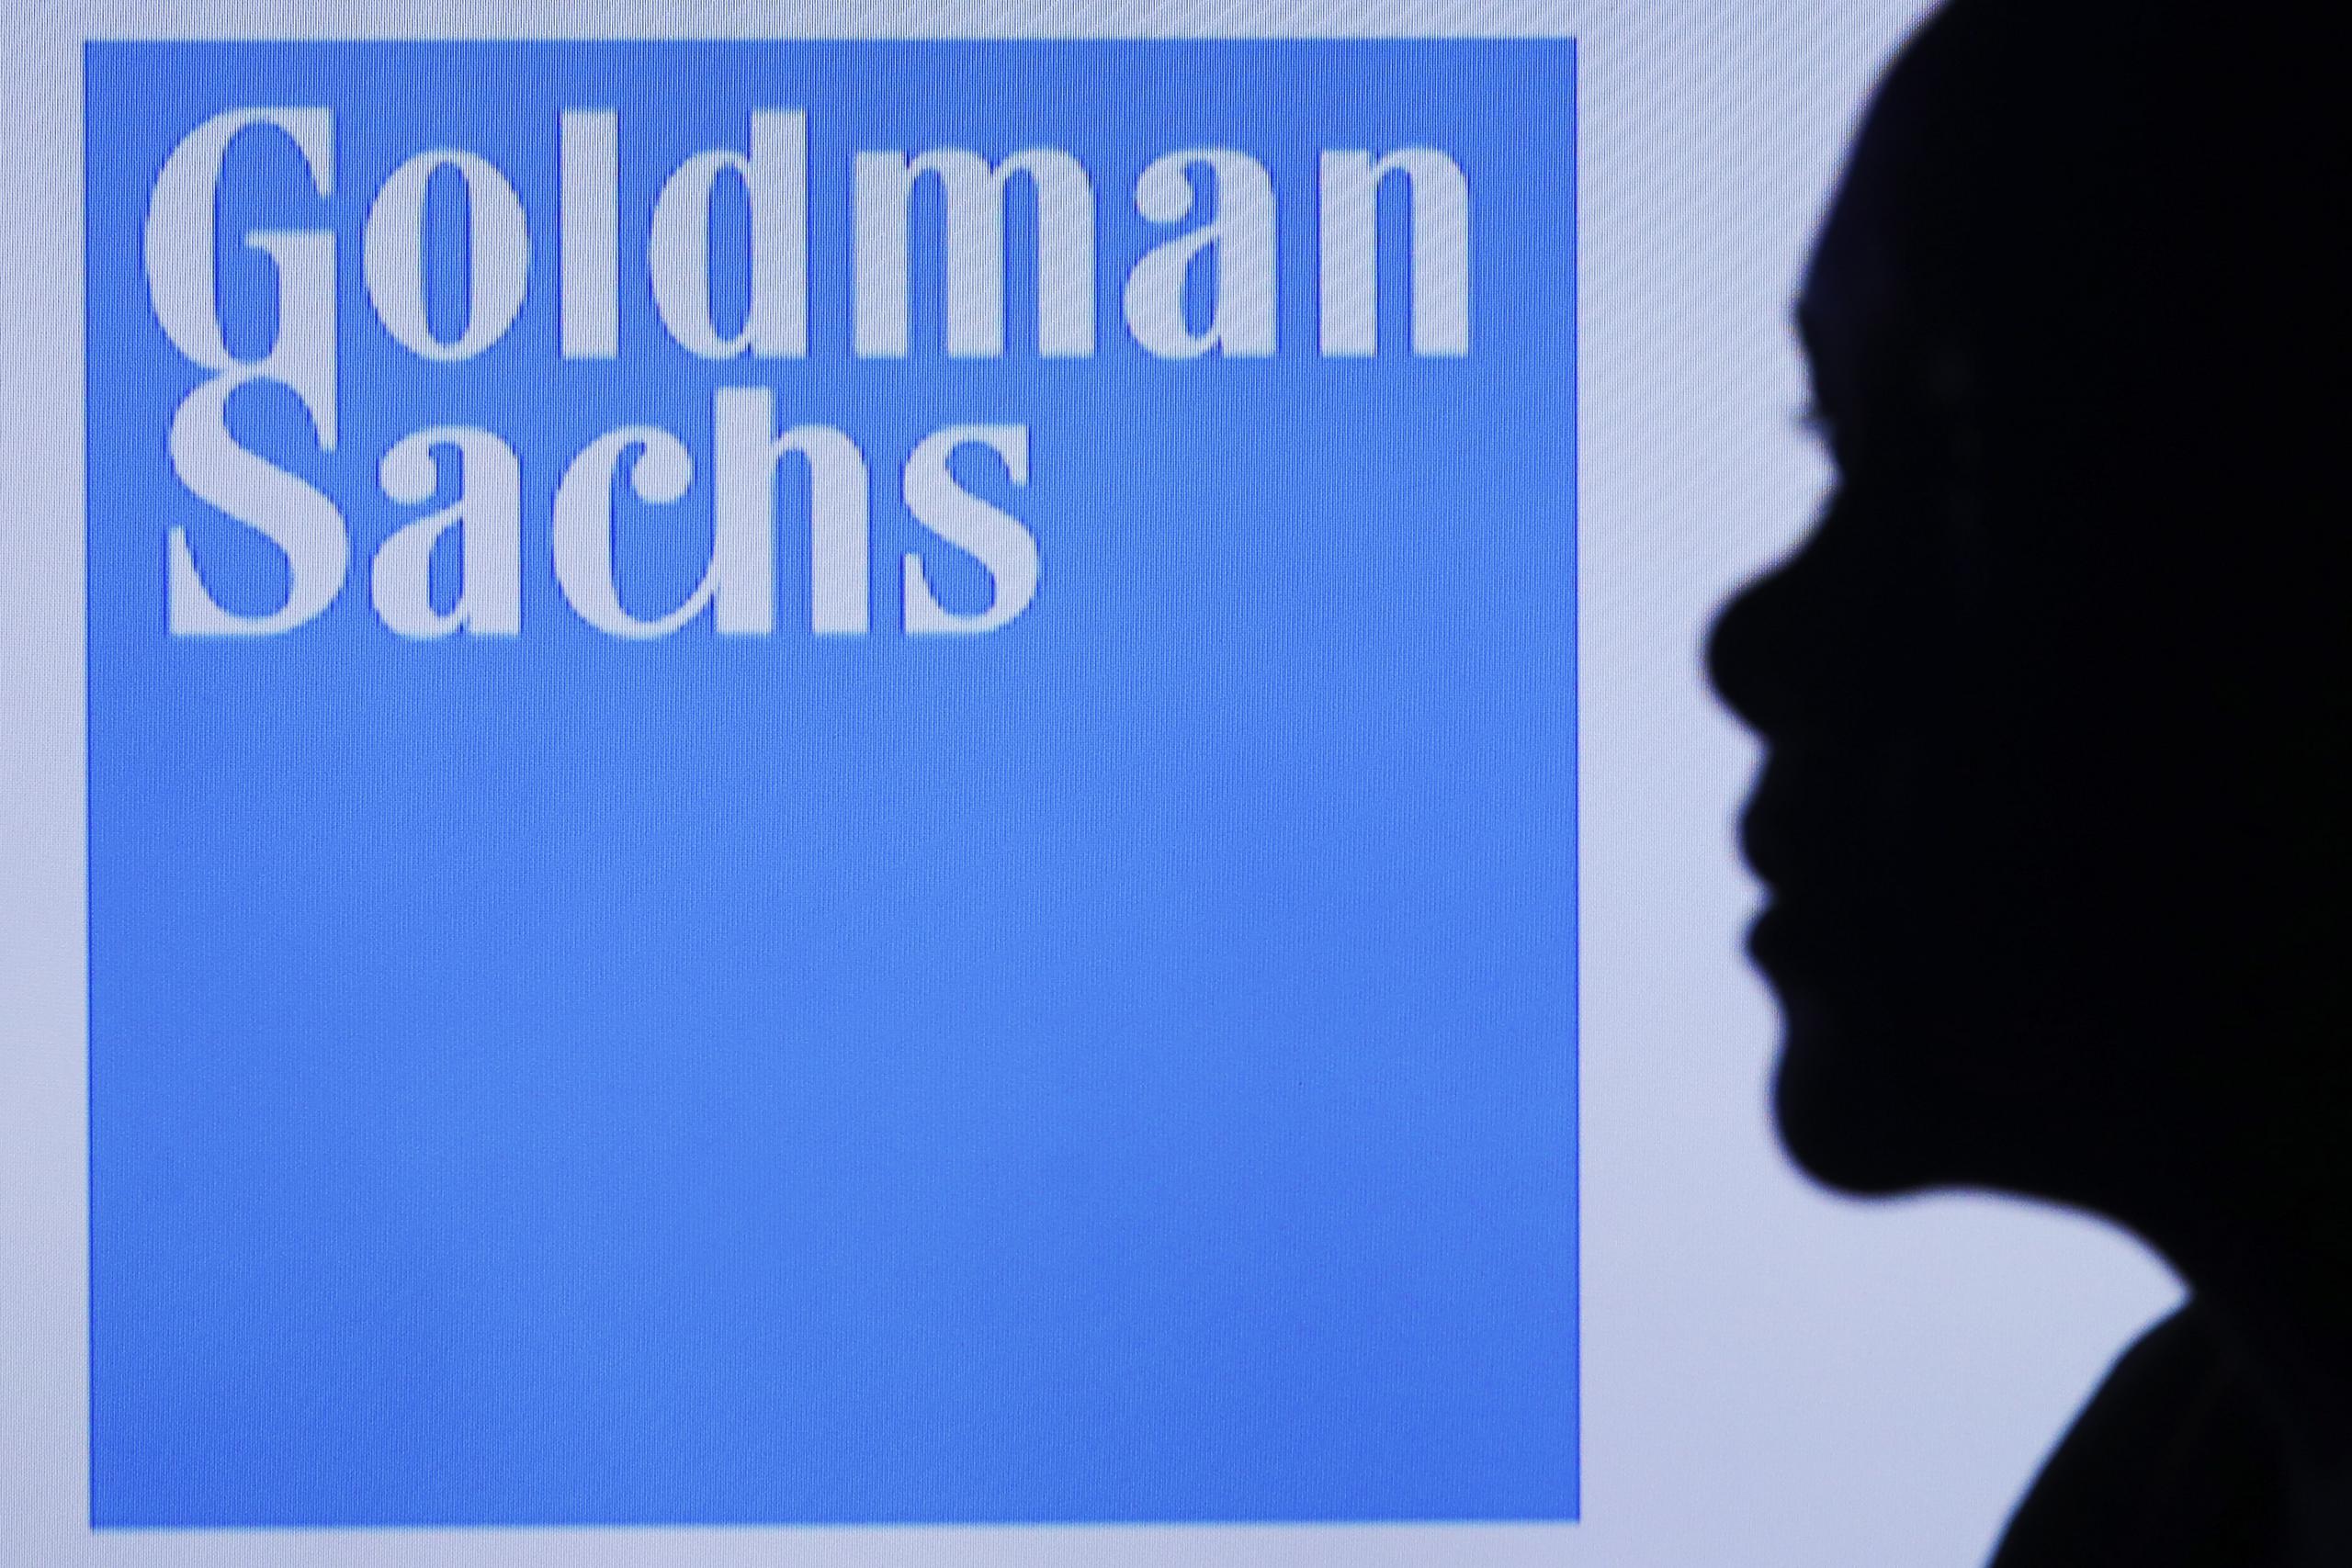 En el primer semestre de 2021, Goldman Sachs reveló unos beneficios netos de 12,322 millones de dólares, un 677 % más que en el mismo periodo del año. EFE/EPA/FAZRY ISMAIL